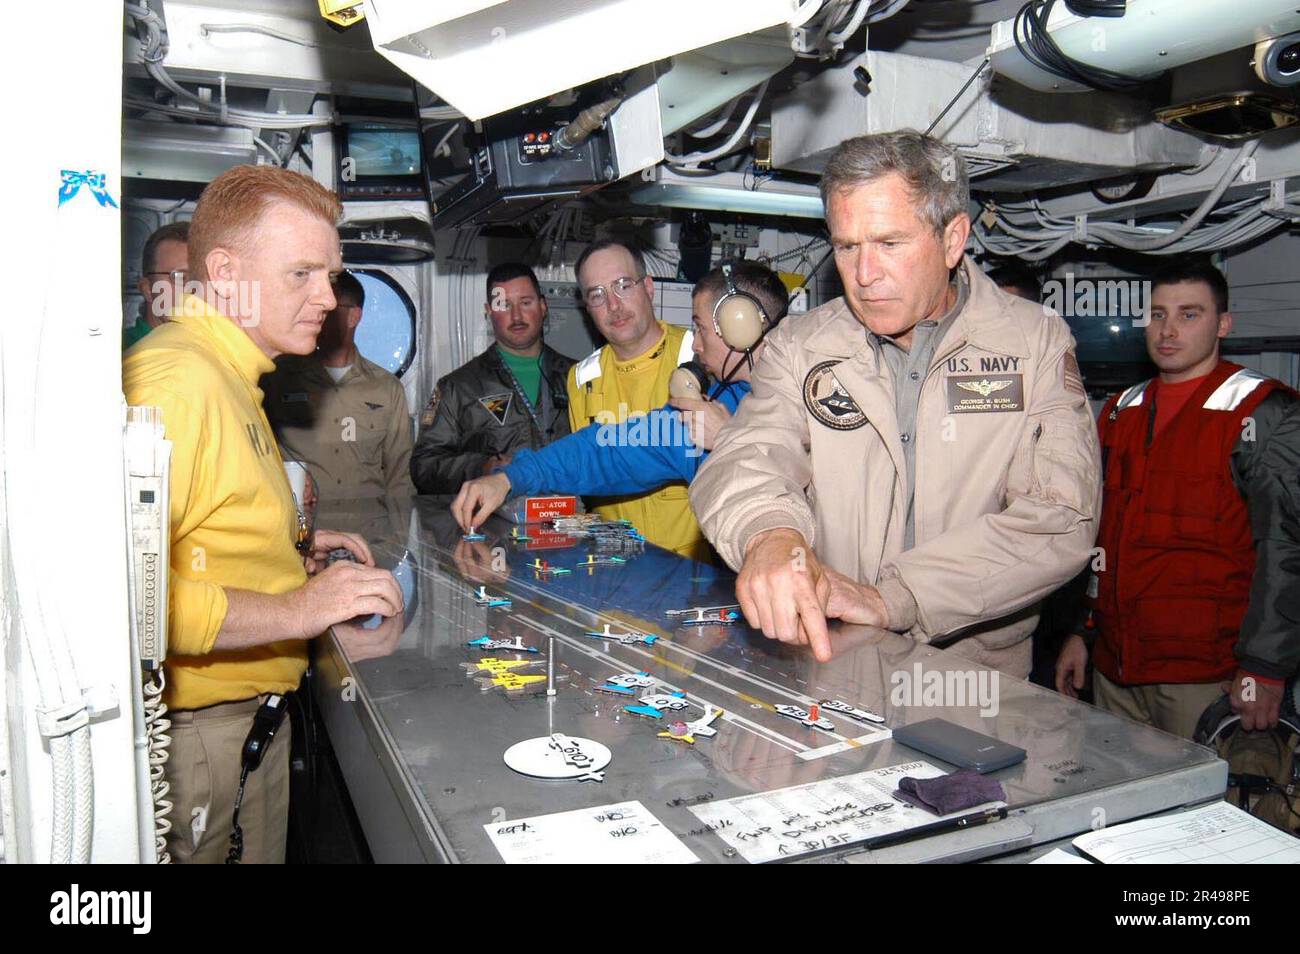 LE président DE la Marine AMÉRICAINE George W. Bush fait une tournée de contrôle du pont de vol lors de sa visite à l'USS Abraham Lincoln (CVN 72) Banque D'Images